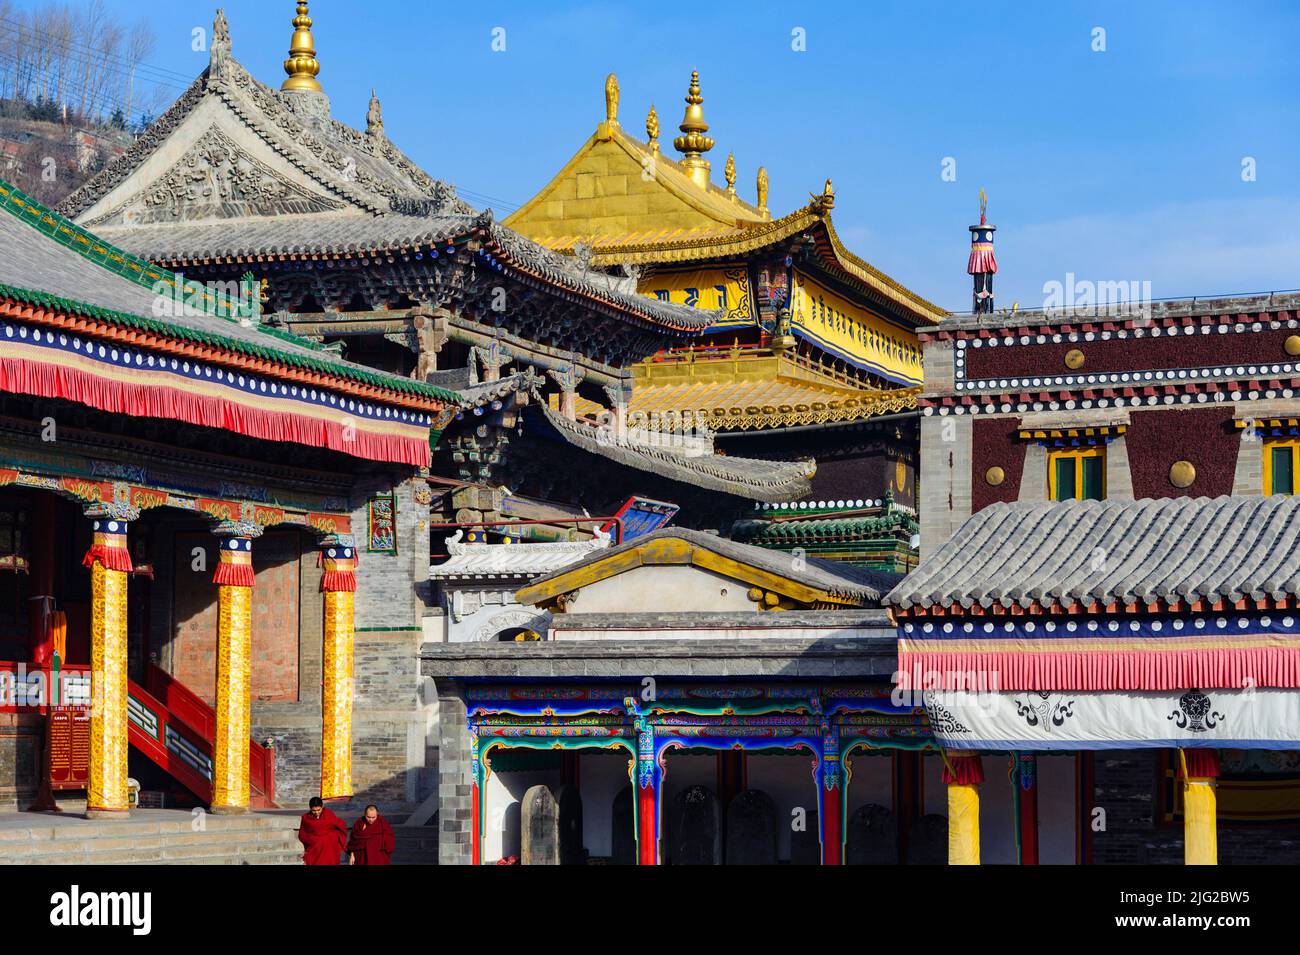 Il tetto dorato si trova tipicamente in un monastero tibetano. Questo si trova nel monastero di Ta'er a Xining, Qinghai. Foto Stock